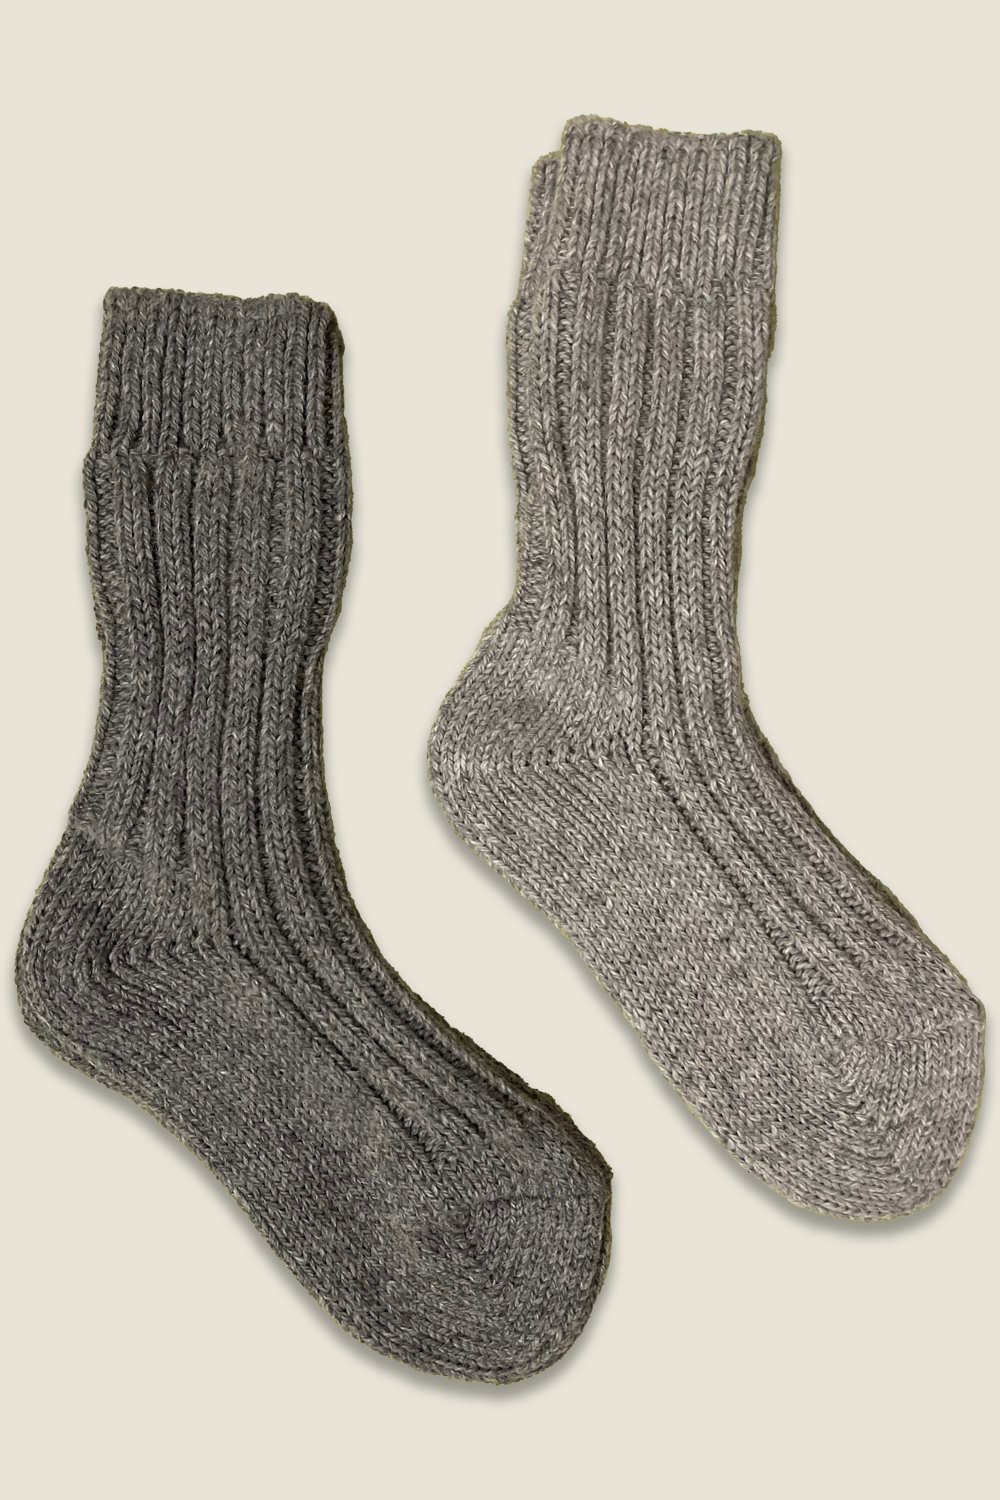 Calcetines de alpaca - gris y gris oscuro - 2 pares